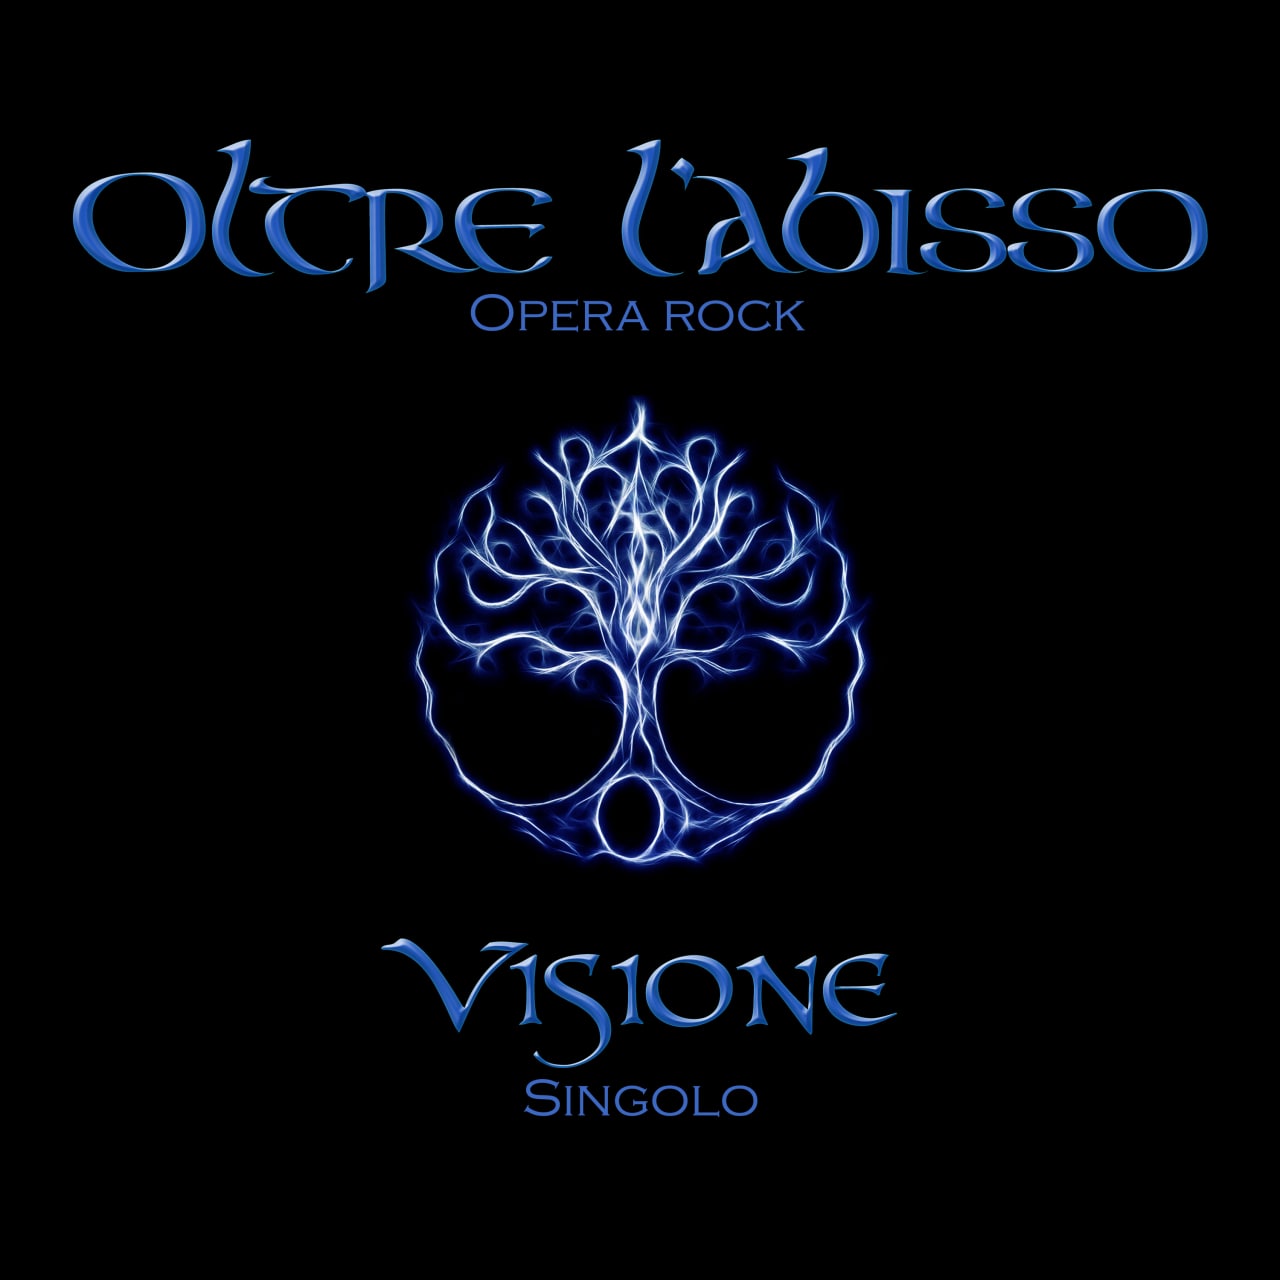 “Visione”, fuori in tutti i digital stores il nuovo singolo degli Oltre l’Abisso